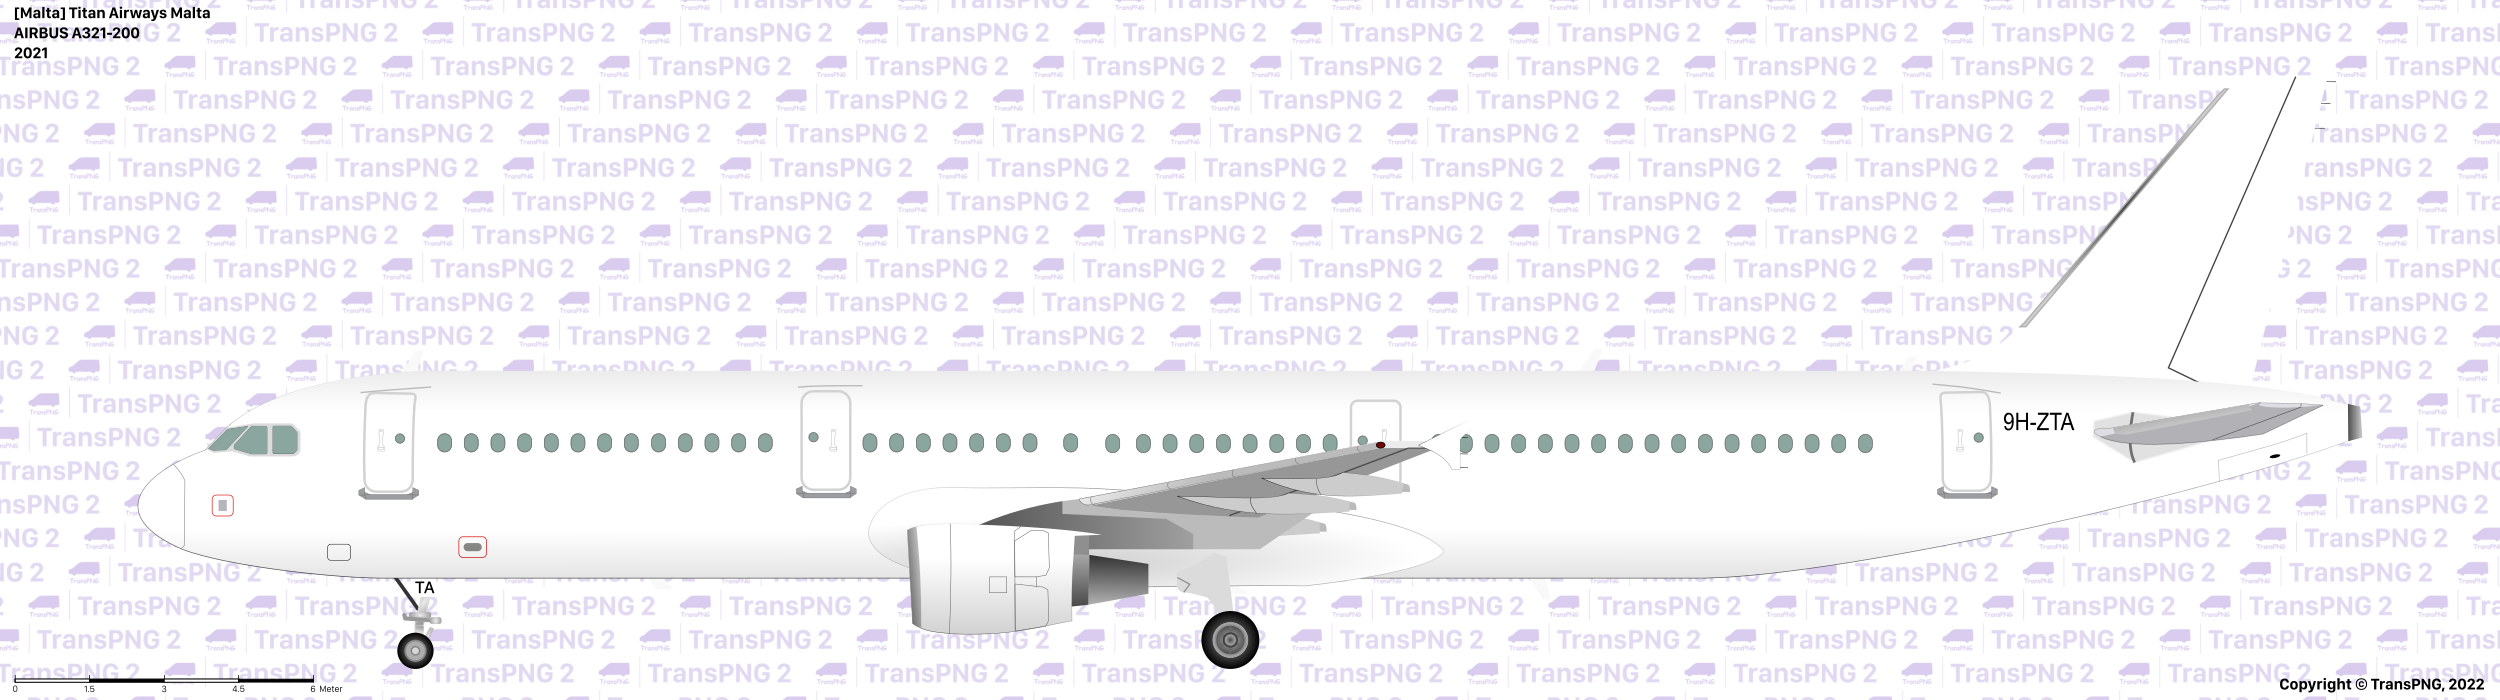 TransPNG.net | 分享世界各地多種交通工具的優秀繪圖 - 飛機 51962944632_d26956b859_o